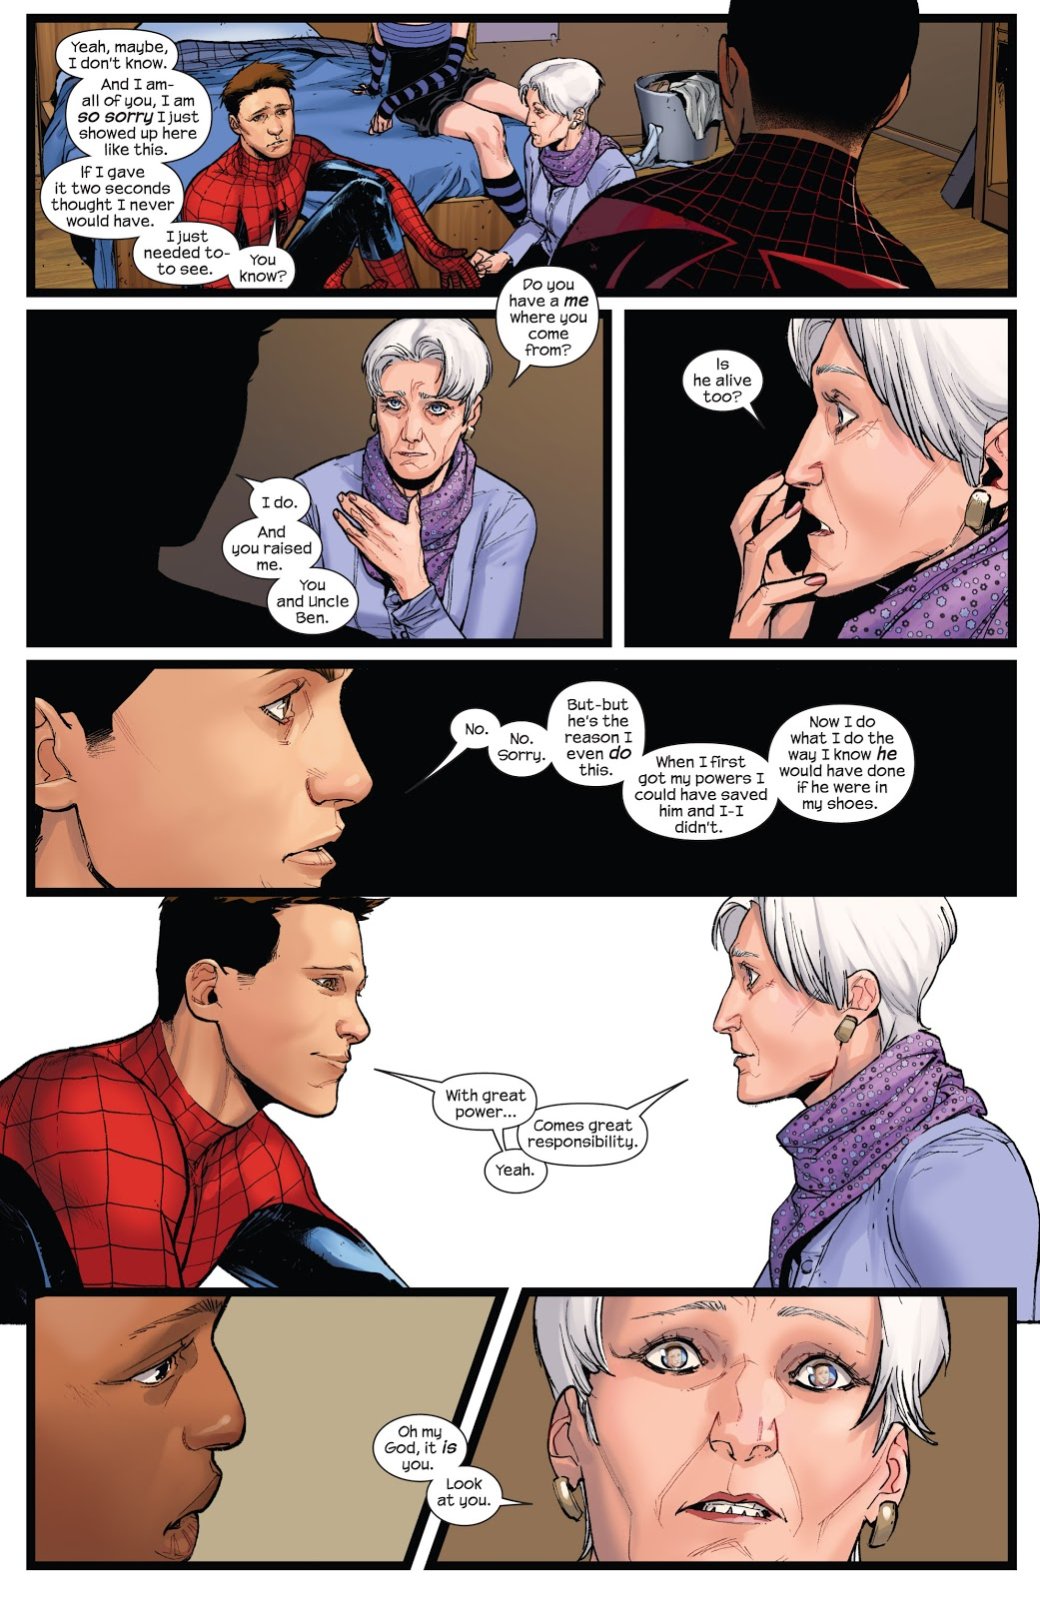 Галерея Spider-Men II доказывает, что сюжет «два Человека-Паука против общей угрозы» не работает дважды - 2 фото